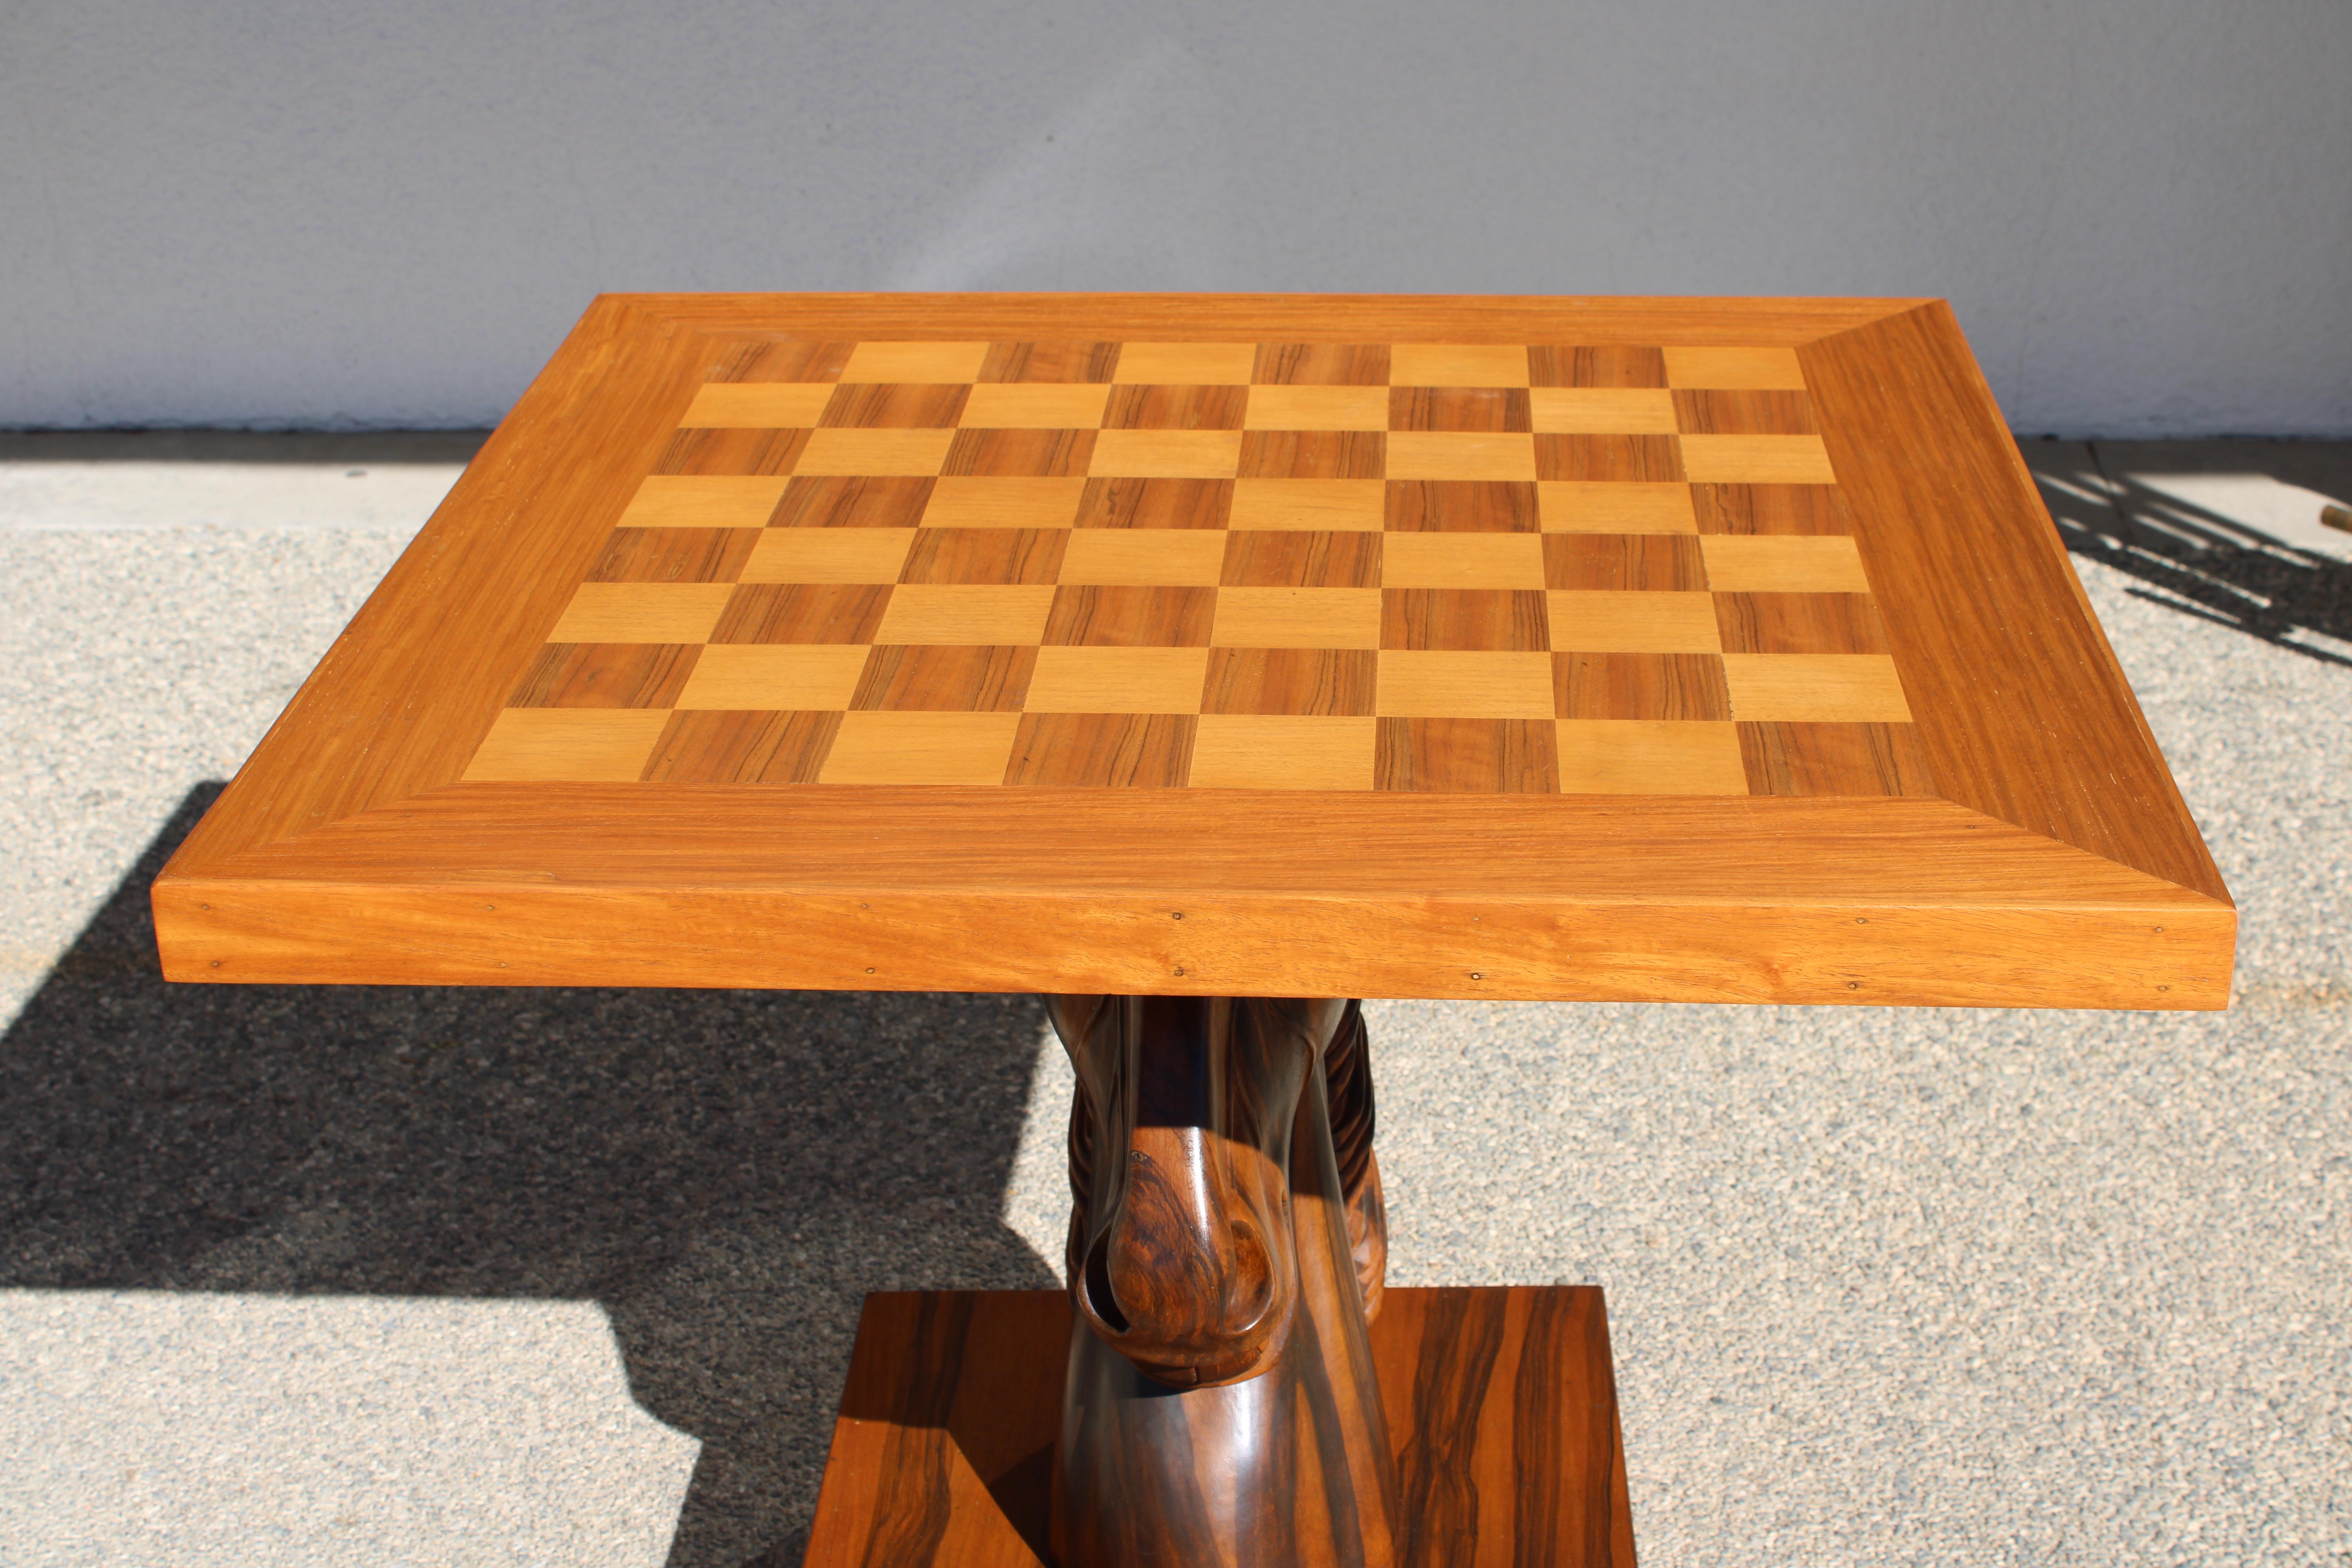 Table d'échecs complète avec pièces d'échecs.  La base et le plateau de la table ont été professionnellement remis à neuf.  Le plateau mesure 31,75